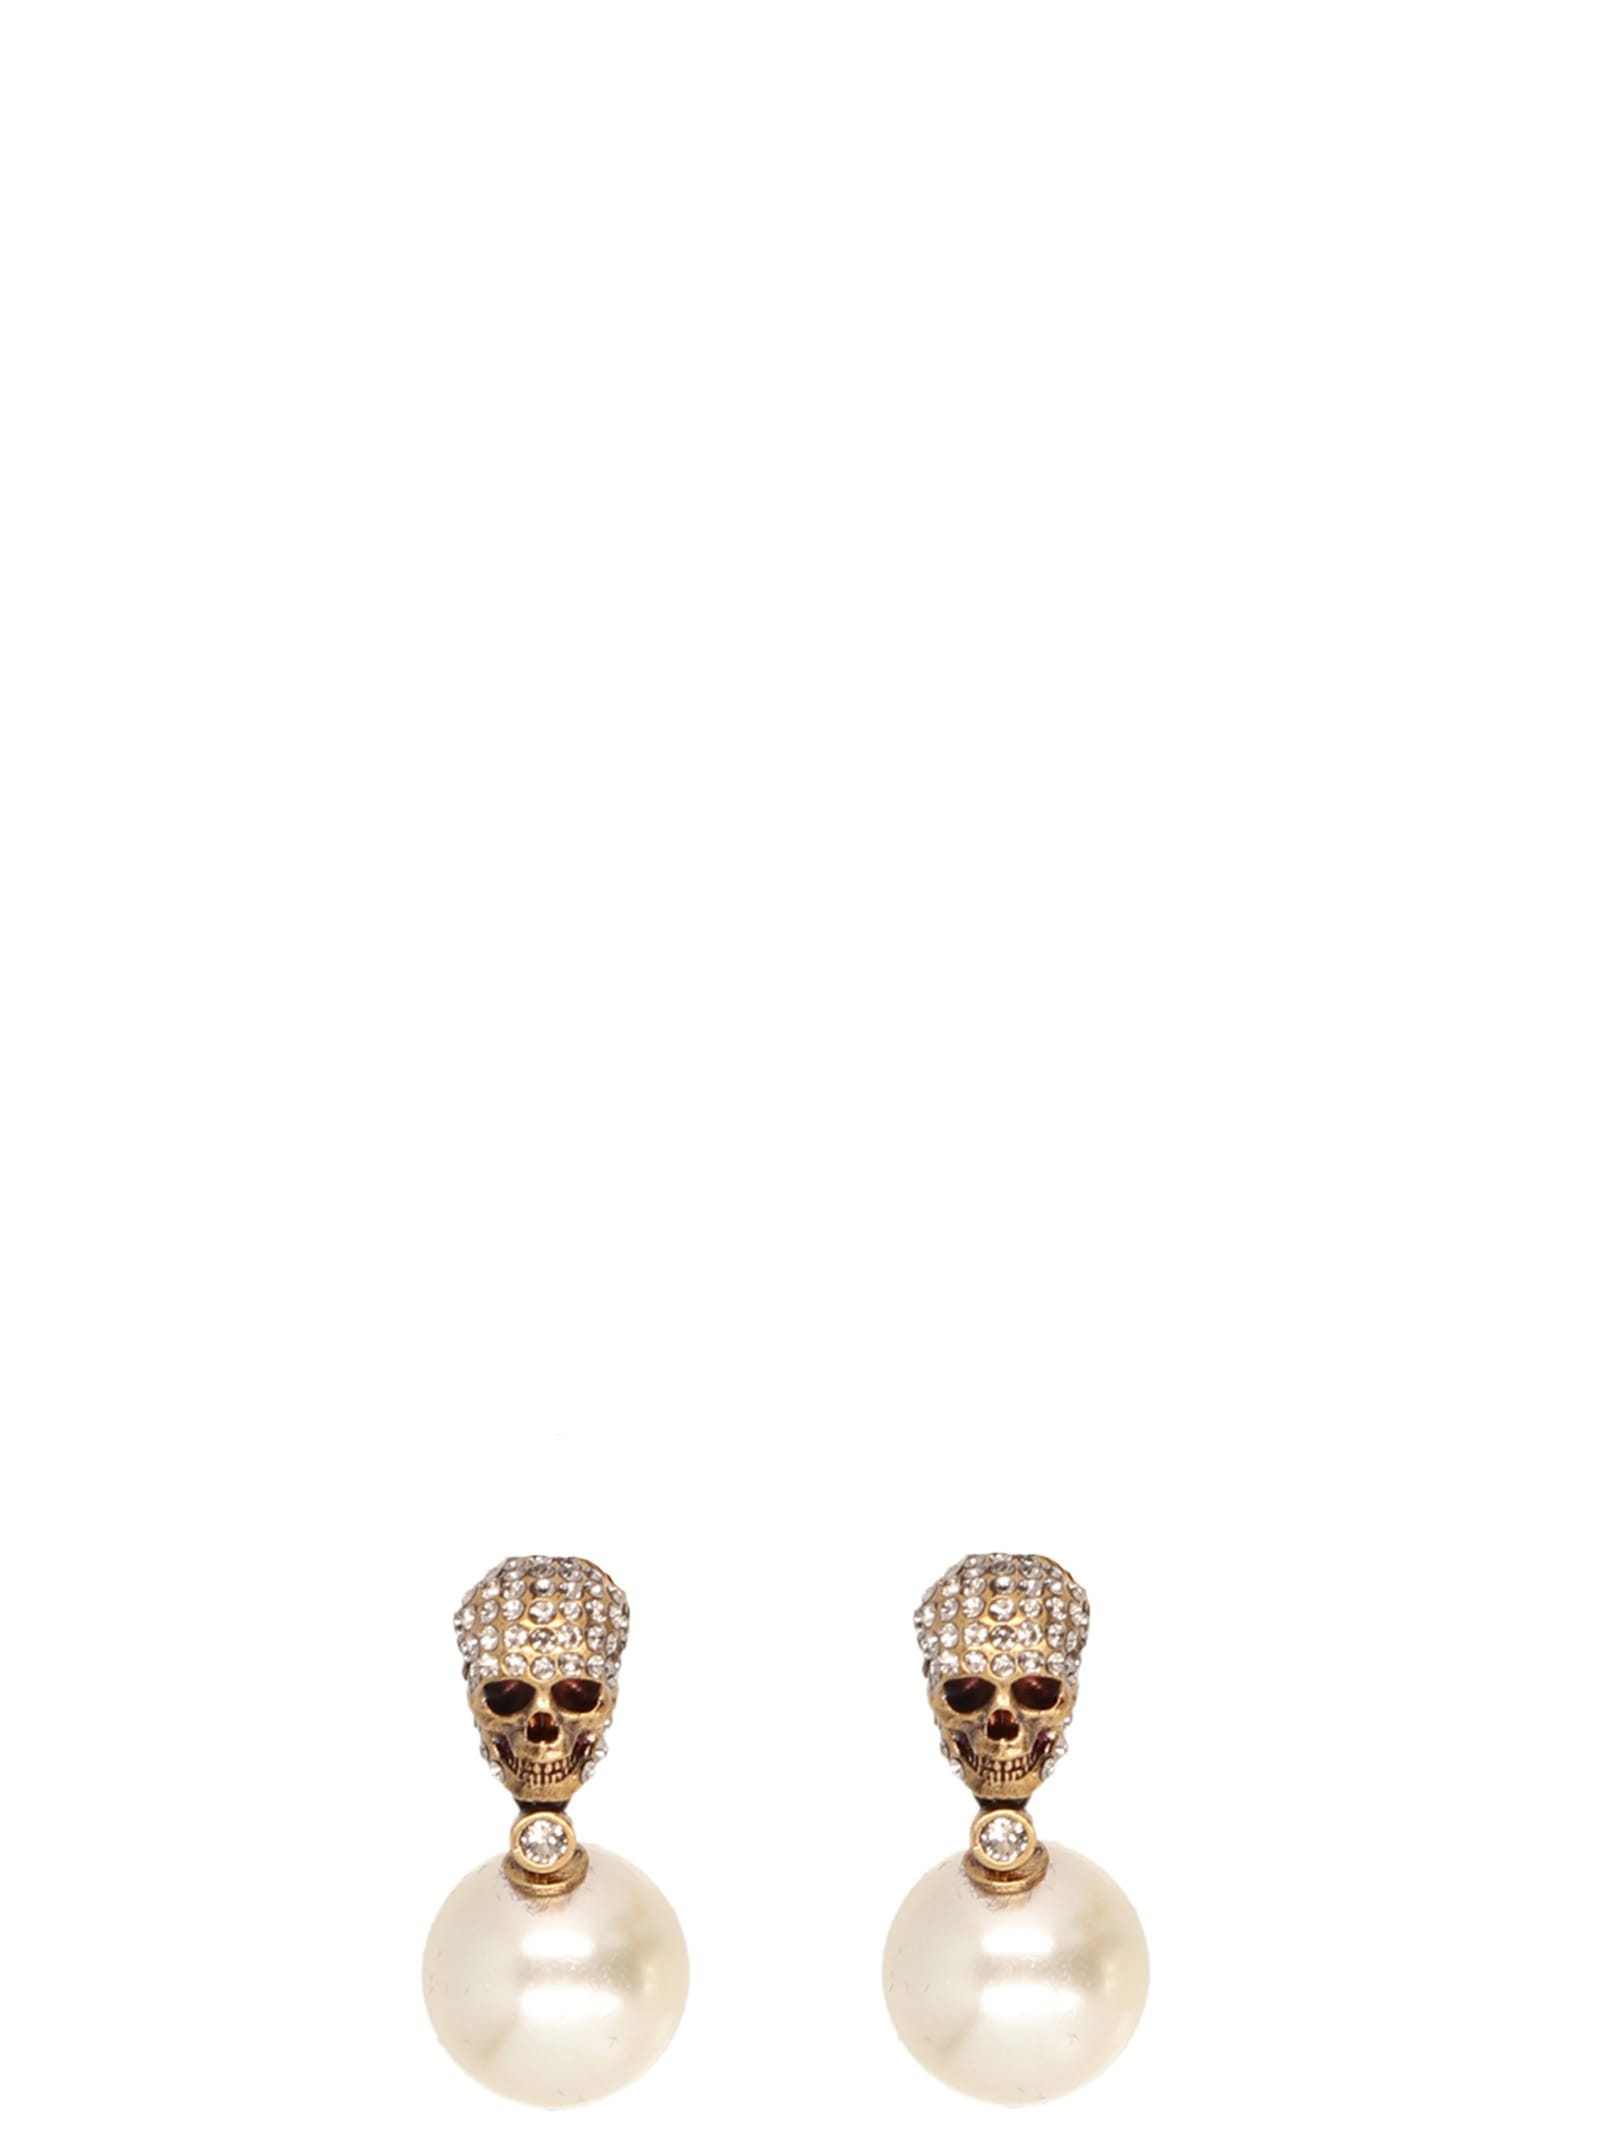 Alexander Mcqueen Pearl N Skull Earrings In Gold